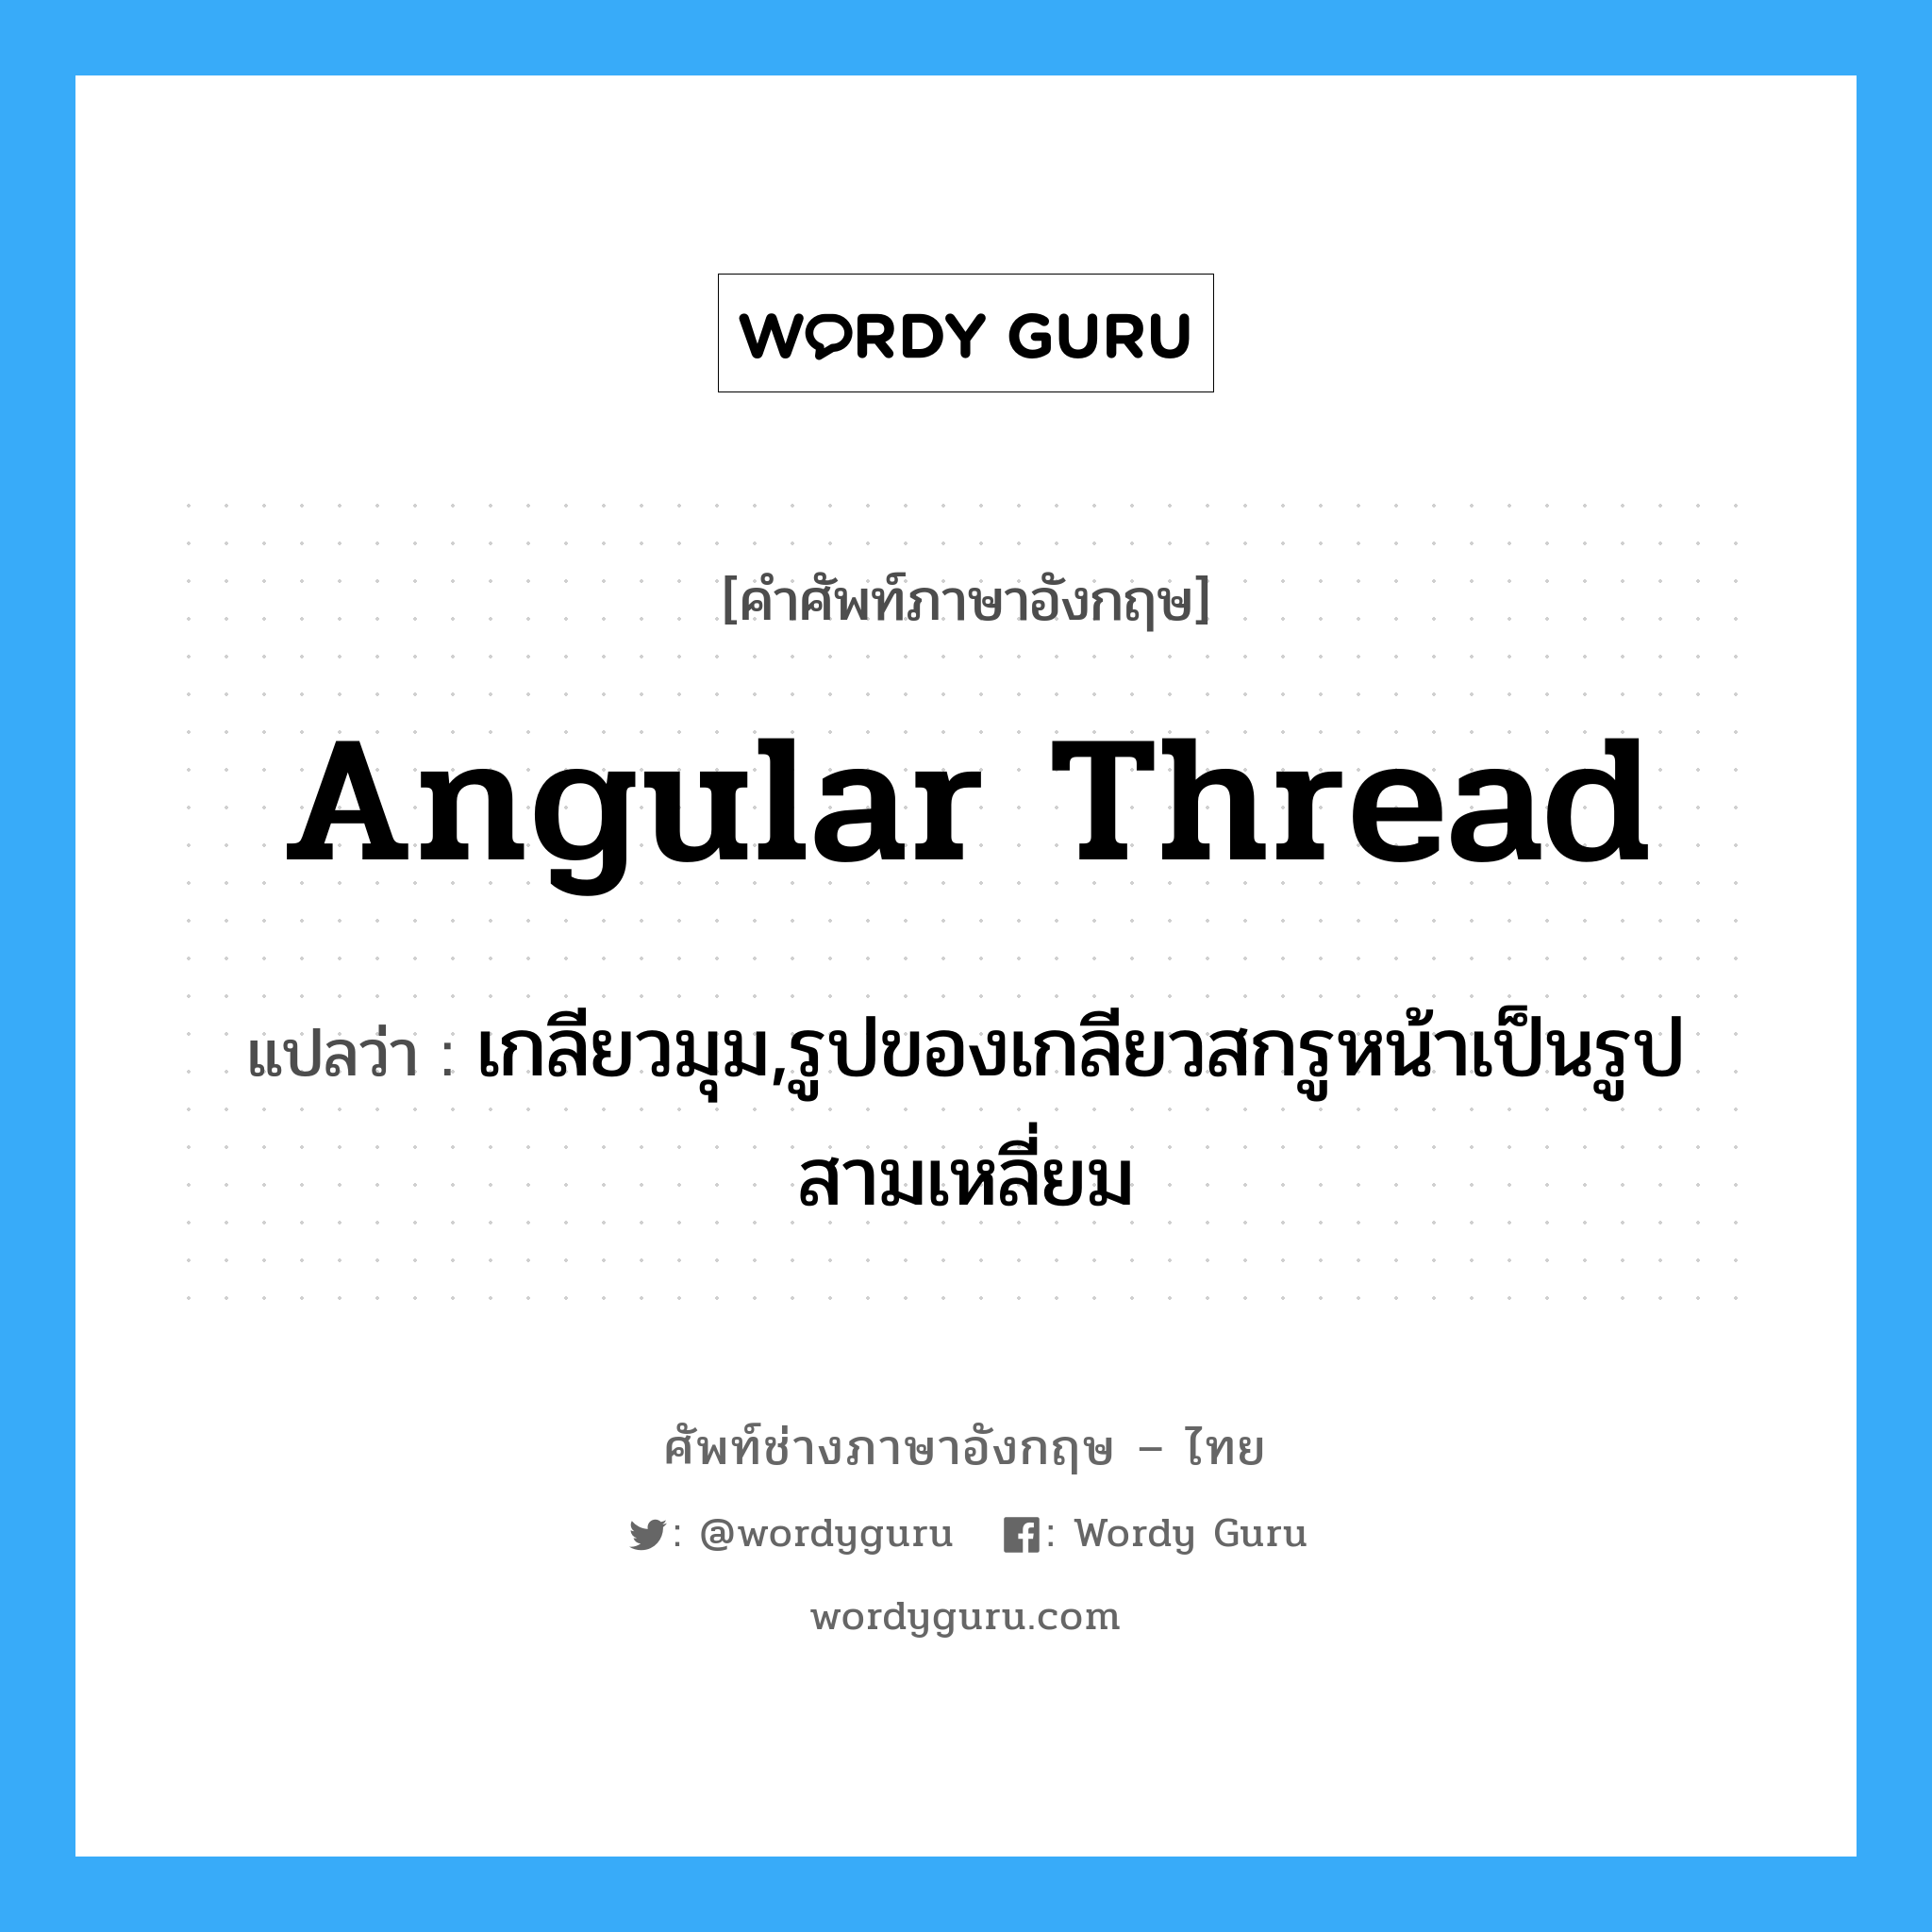 angular thread แปลว่า?, คำศัพท์ช่างภาษาอังกฤษ - ไทย angular thread คำศัพท์ภาษาอังกฤษ angular thread แปลว่า เกลียวมุม,รูปของเกลียวสกรูหน้าเป็นรูปสามเหลี่ยม